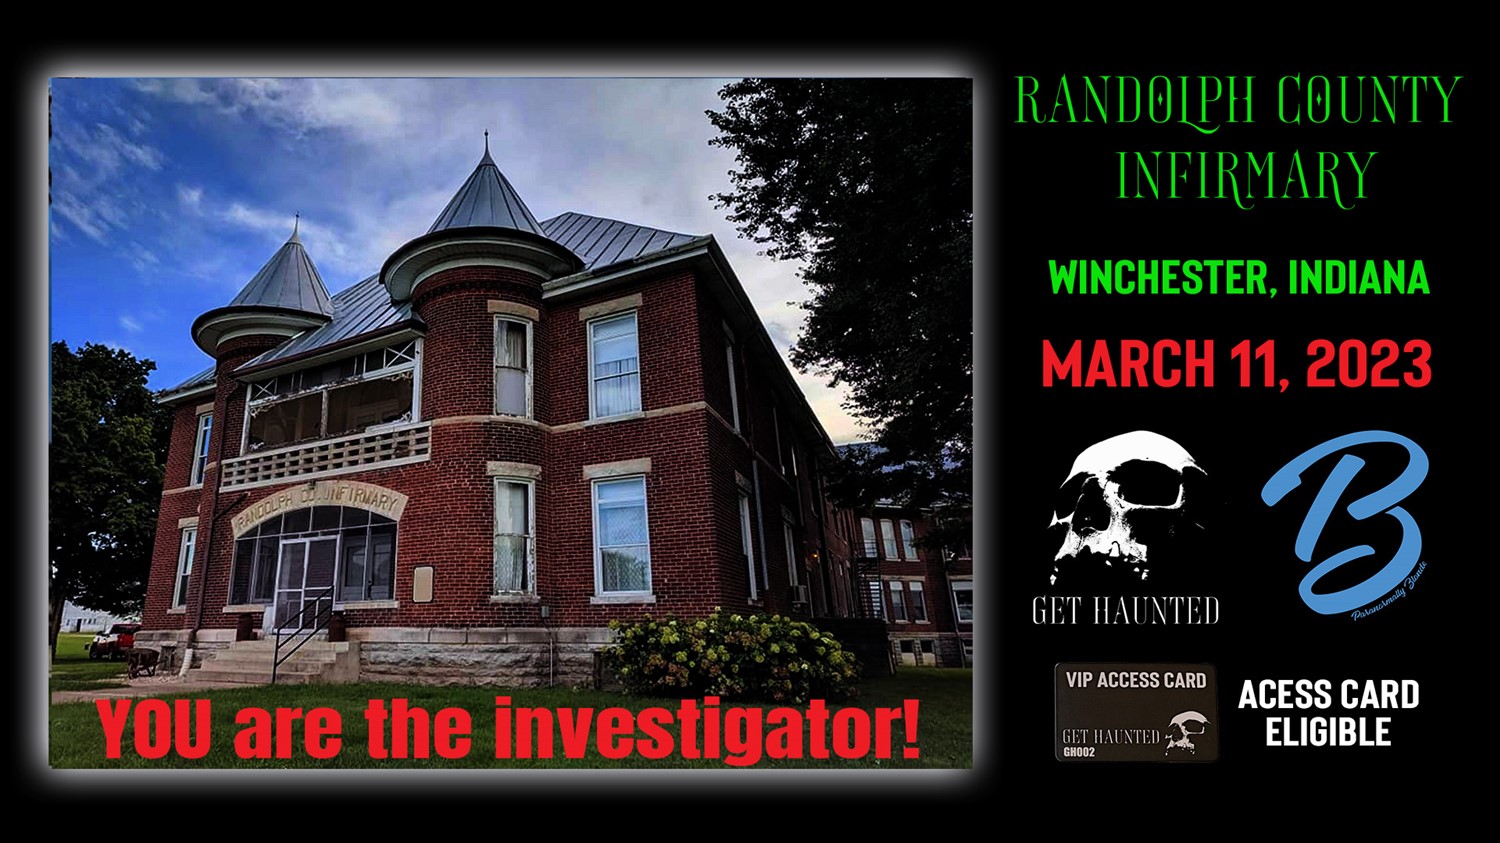 Randolph County Infirmary - Paranormal Experience!  on mar. 11, 19:00@Randolph County Asylum - Compra entradas y obtén información enThriller Events thriller.events